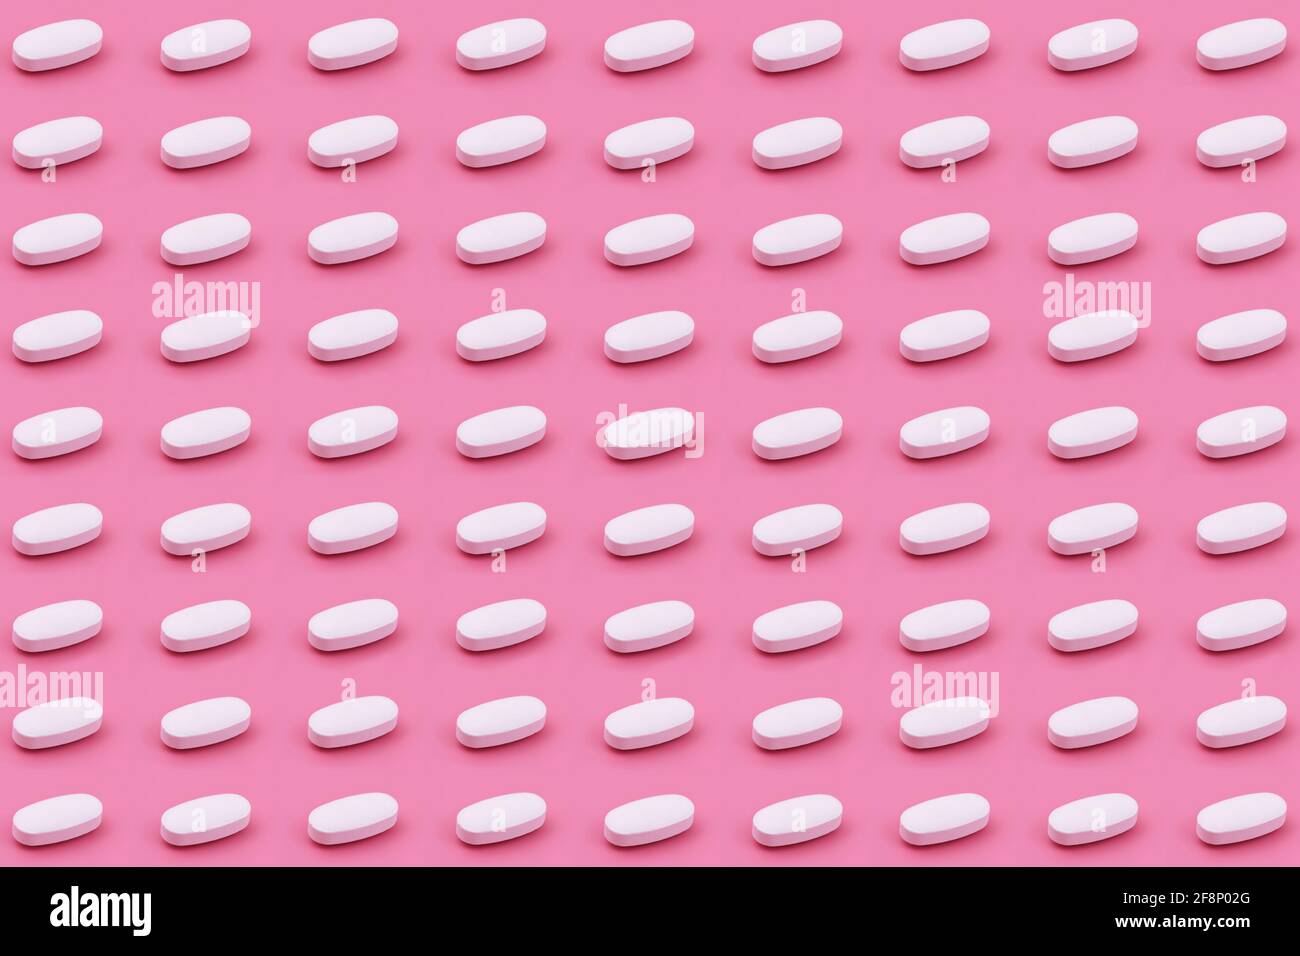 Compressa di medicina farmaceutica bianca su sfondo rosa, concetti creativi di medicina stile minimale con sfondo colorato di carta Foto Stock